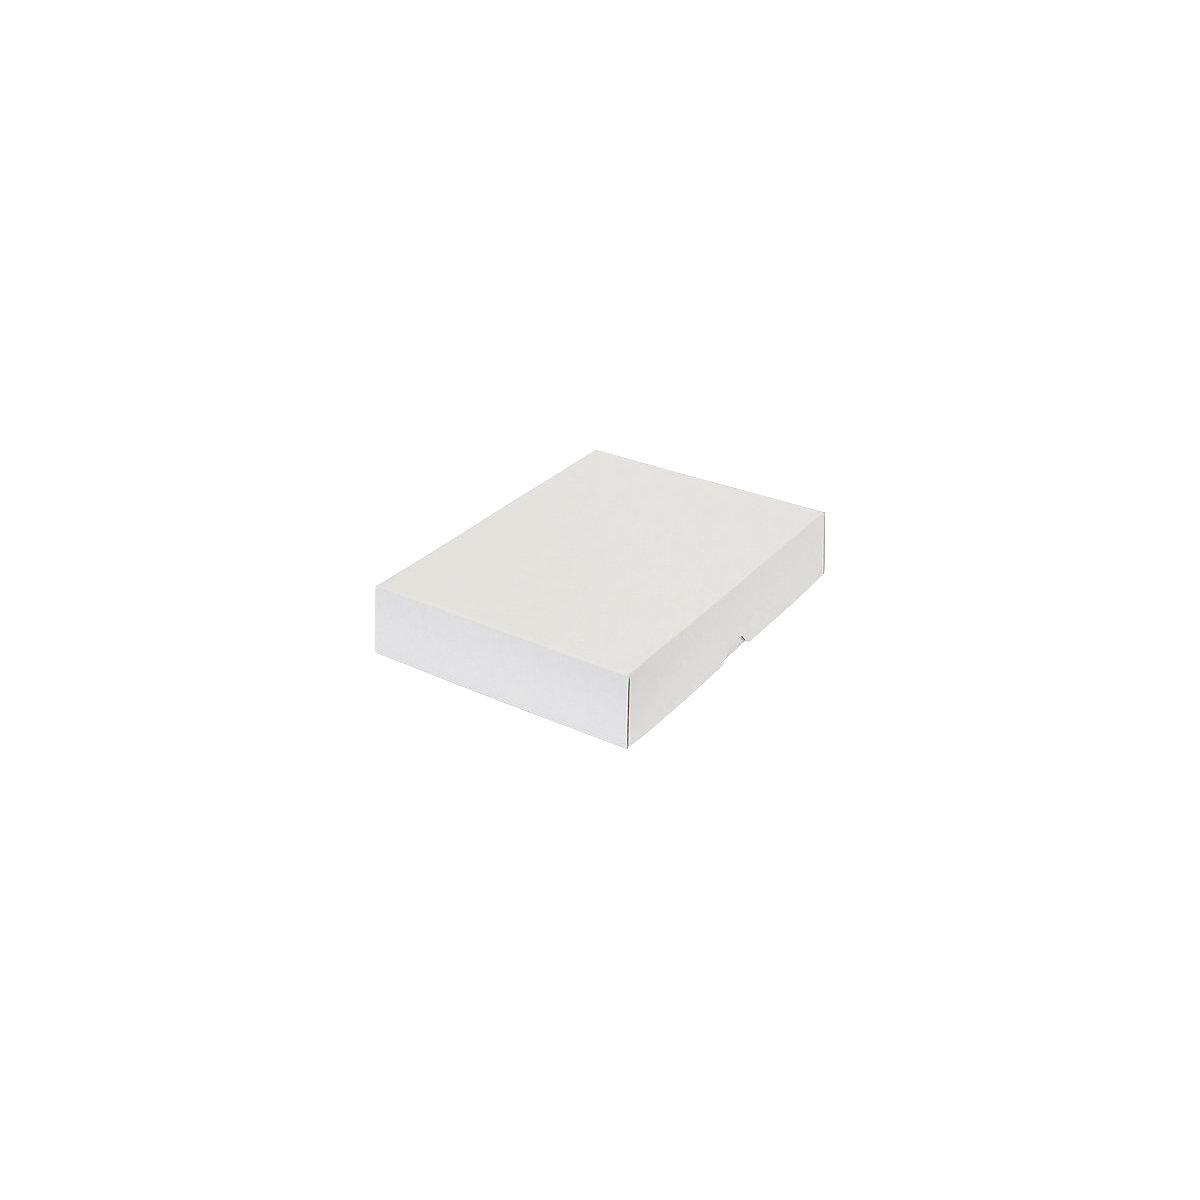 Stülpdeckelkarton, zweiteilig, Innenmaße 302 x 213 x 55 mm, A4, weiß, ab 300 Stk-50